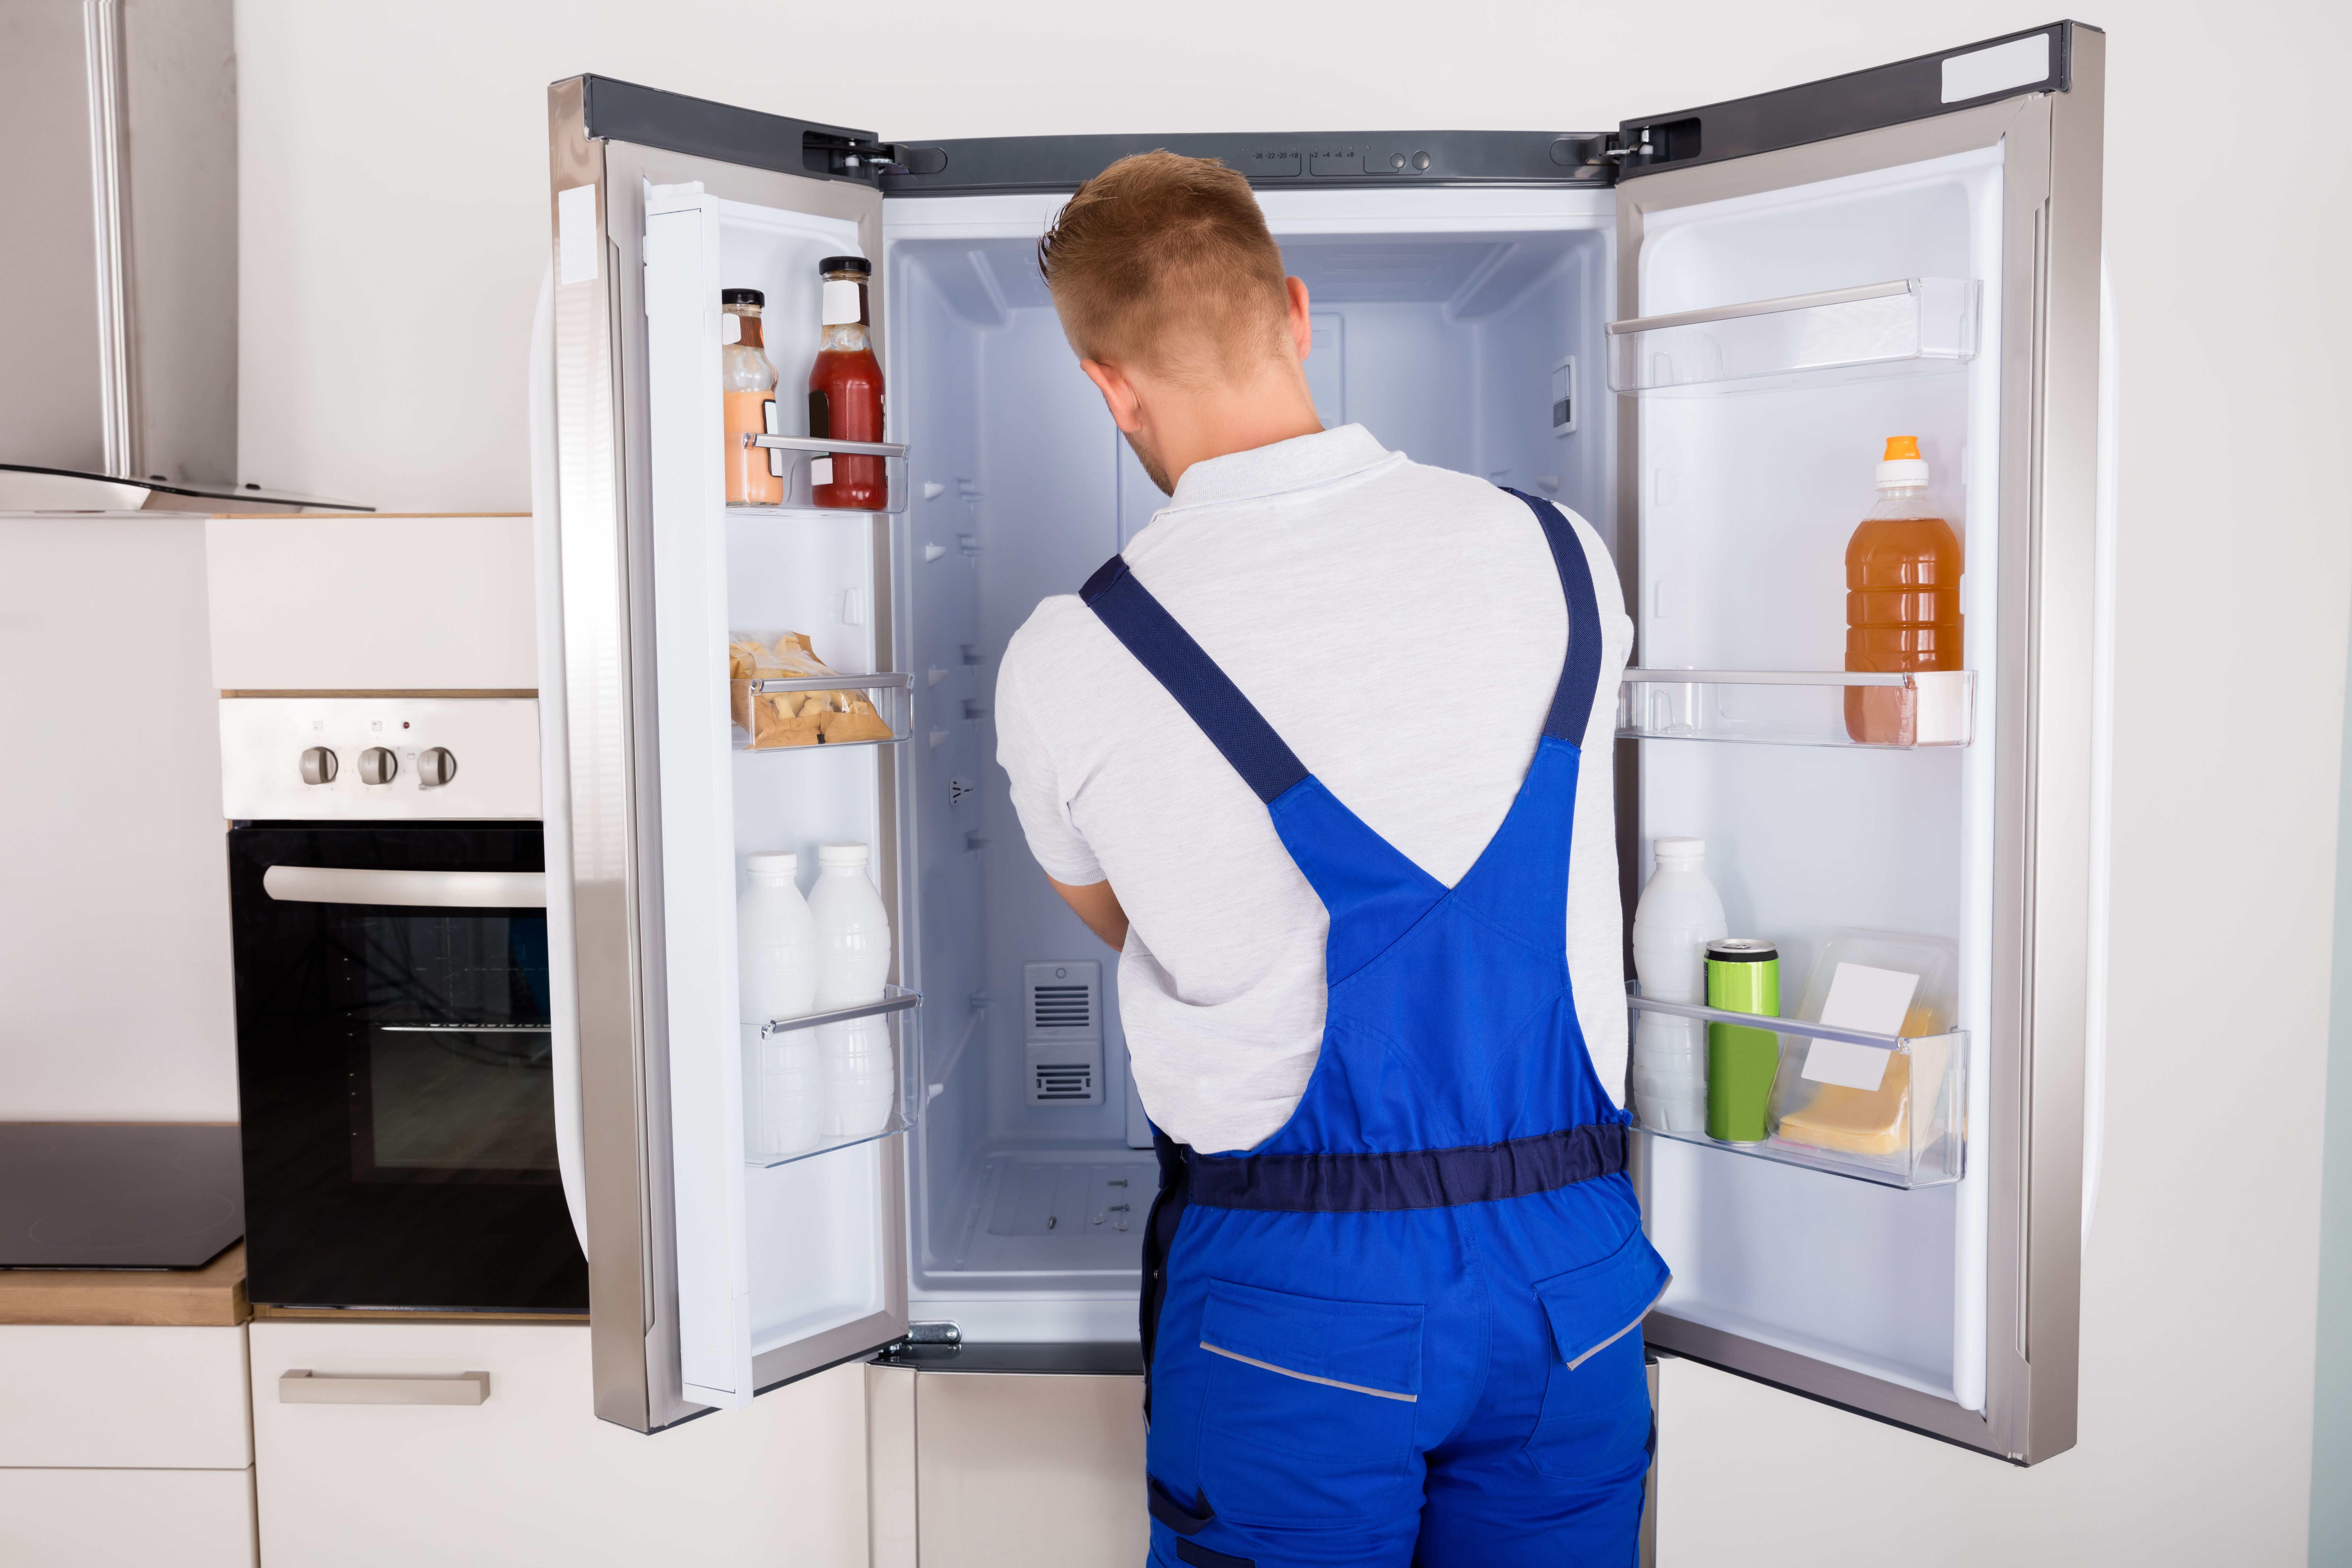 Ремонт холодильников на дому ростов на дону